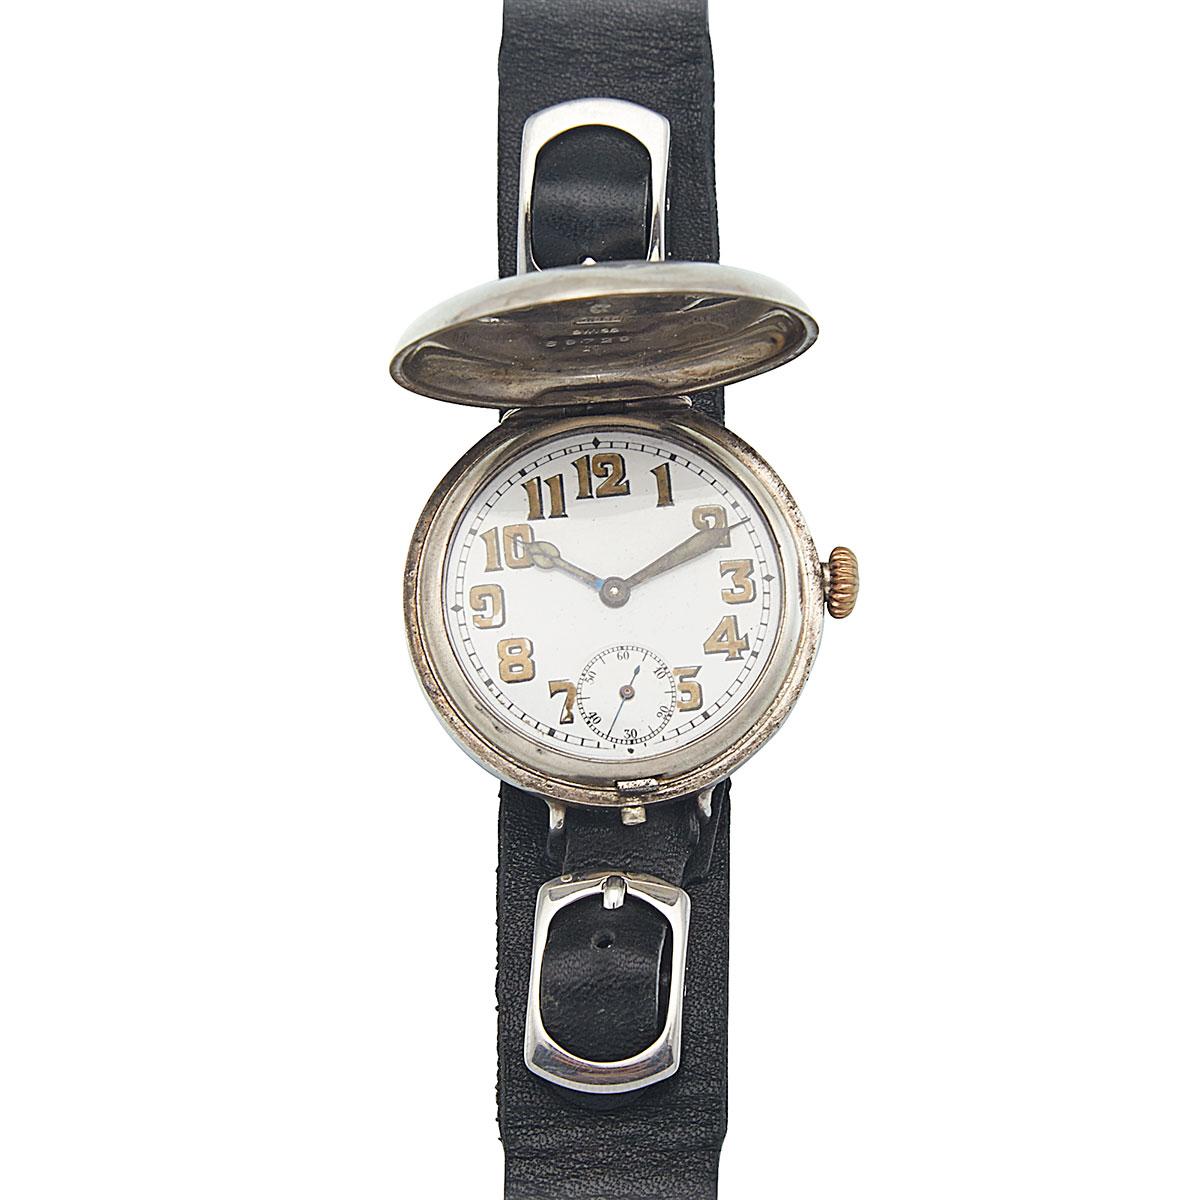 Rolex “Trench” Wristwatch